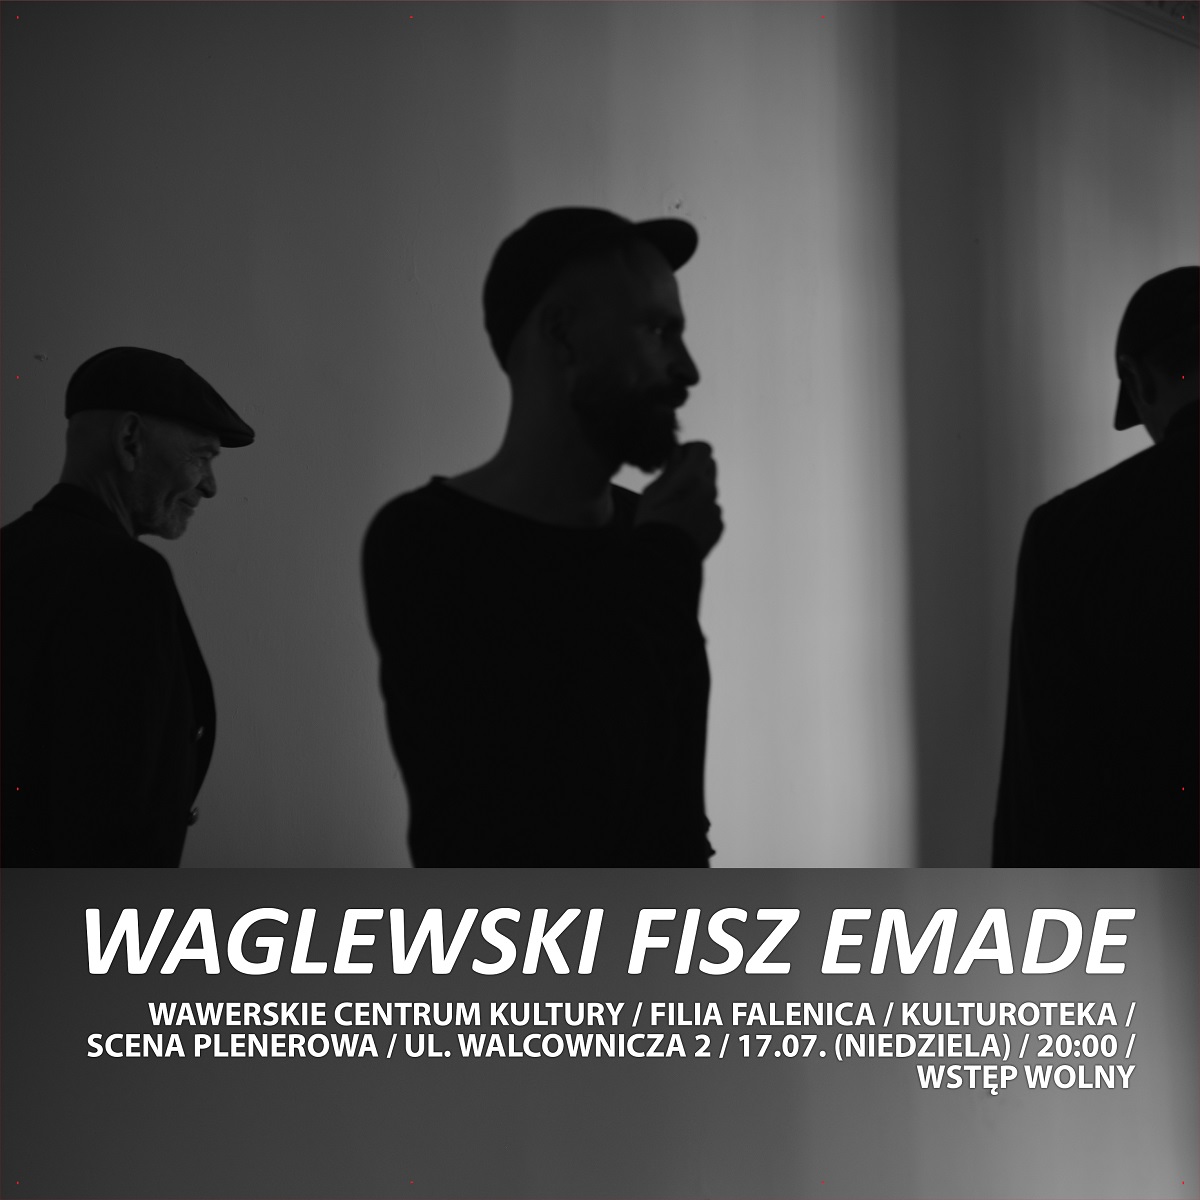 Plakat Waglewski Fisz Emade w WCK Filia Falenica 79628